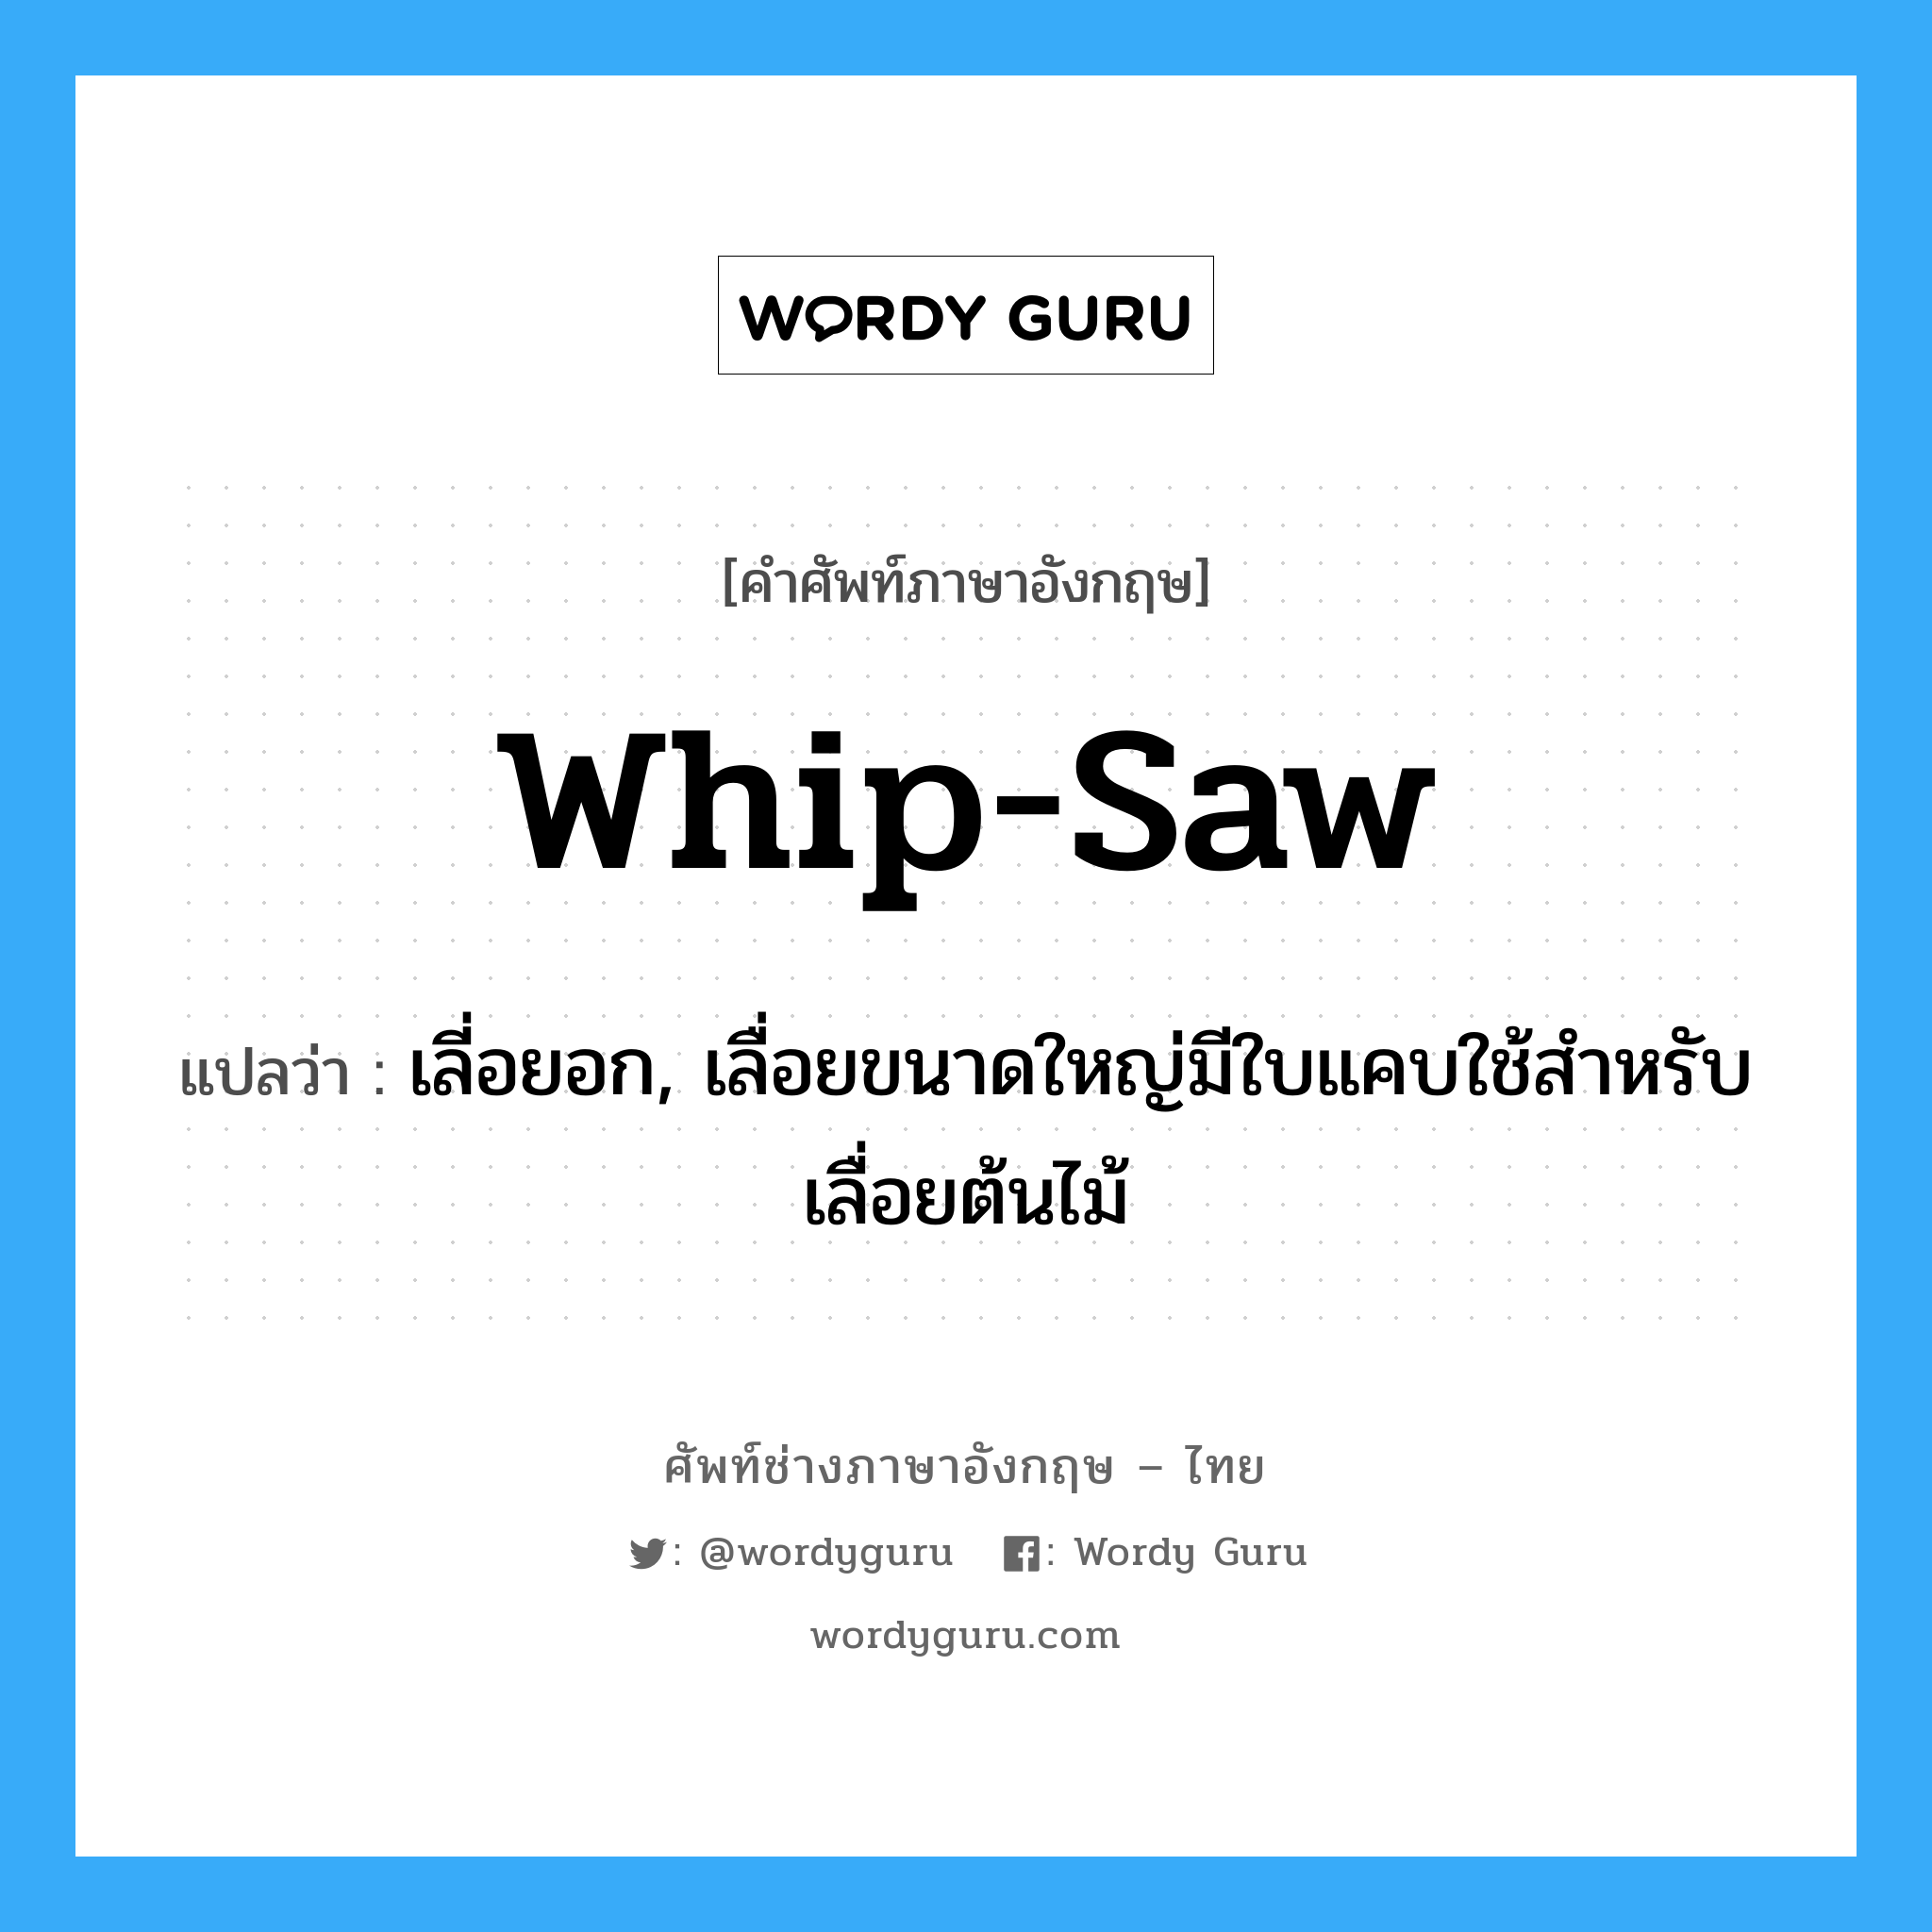 whip-saw แปลว่า?, คำศัพท์ช่างภาษาอังกฤษ - ไทย whip-saw คำศัพท์ภาษาอังกฤษ whip-saw แปลว่า เลี่อยอก, เลื่อยขนาดใหญ่มีใบแคบใช้สำหรับเลื่อยต้นไม้